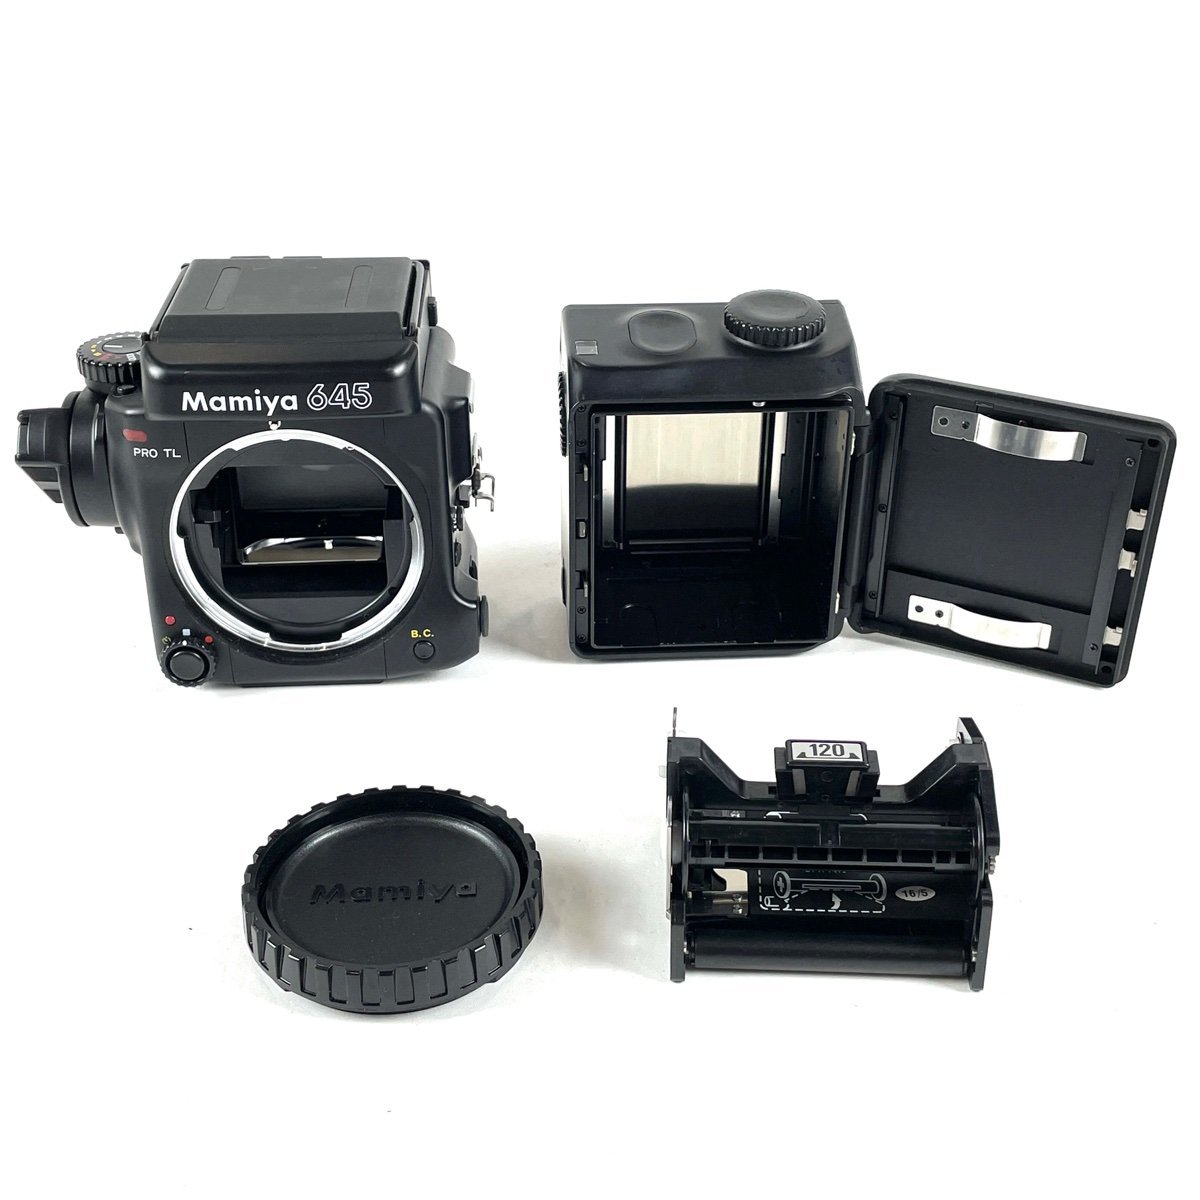 フラワープリント Mamiya 645 PRO TL ボディ - デジタル一眼カメラ